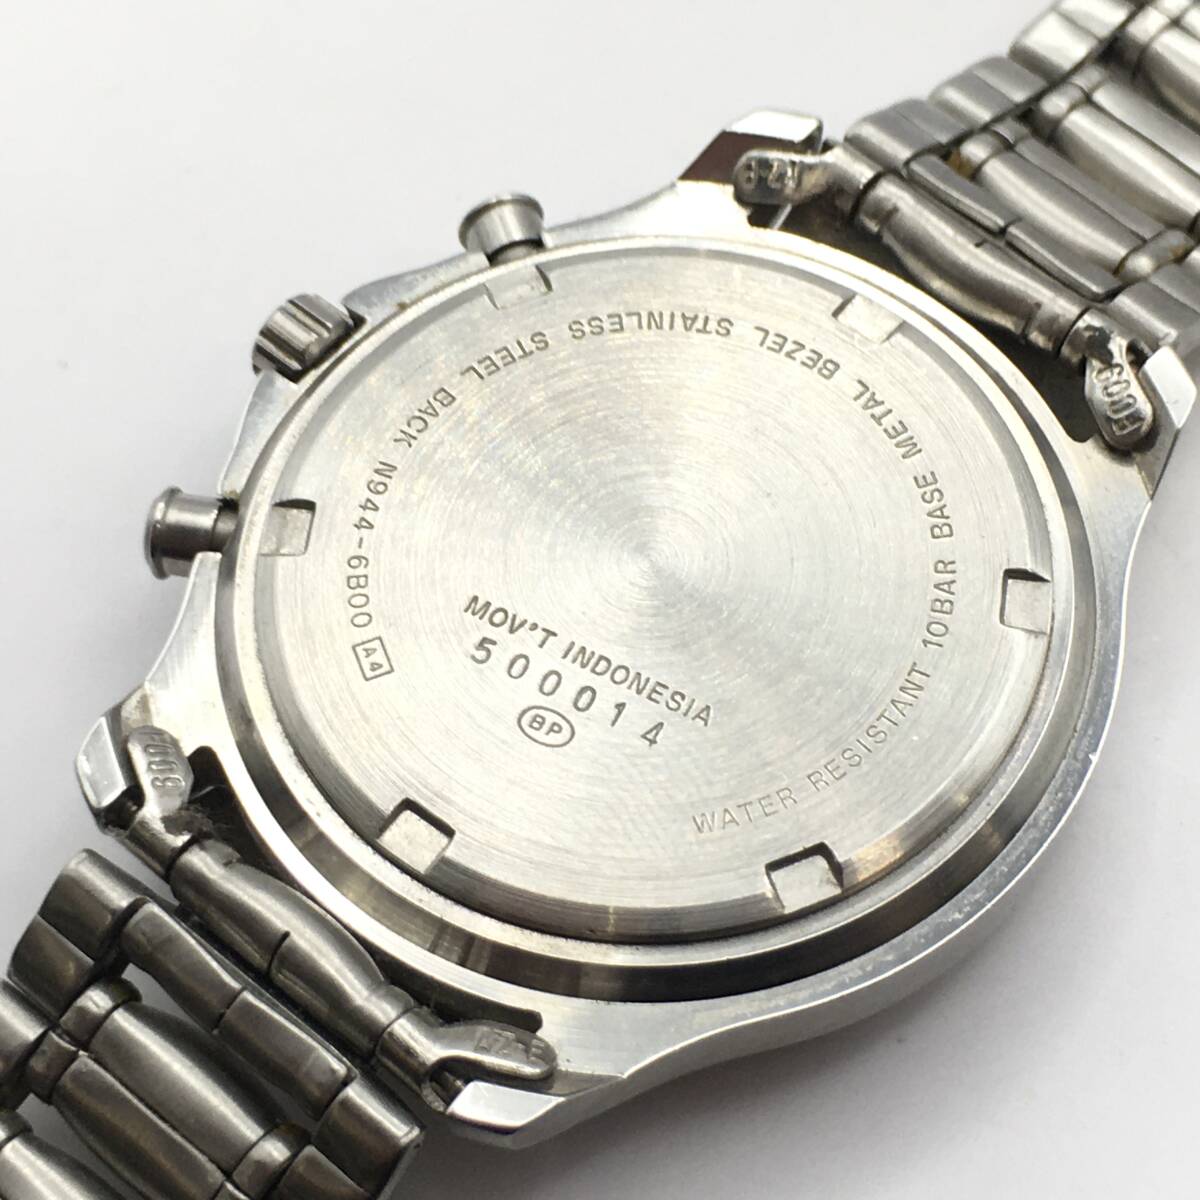 0K12-91 ALBA/ Alba CARIB Carib alarm Chrono 3 hands men's quartz wristwatch N944-6B00